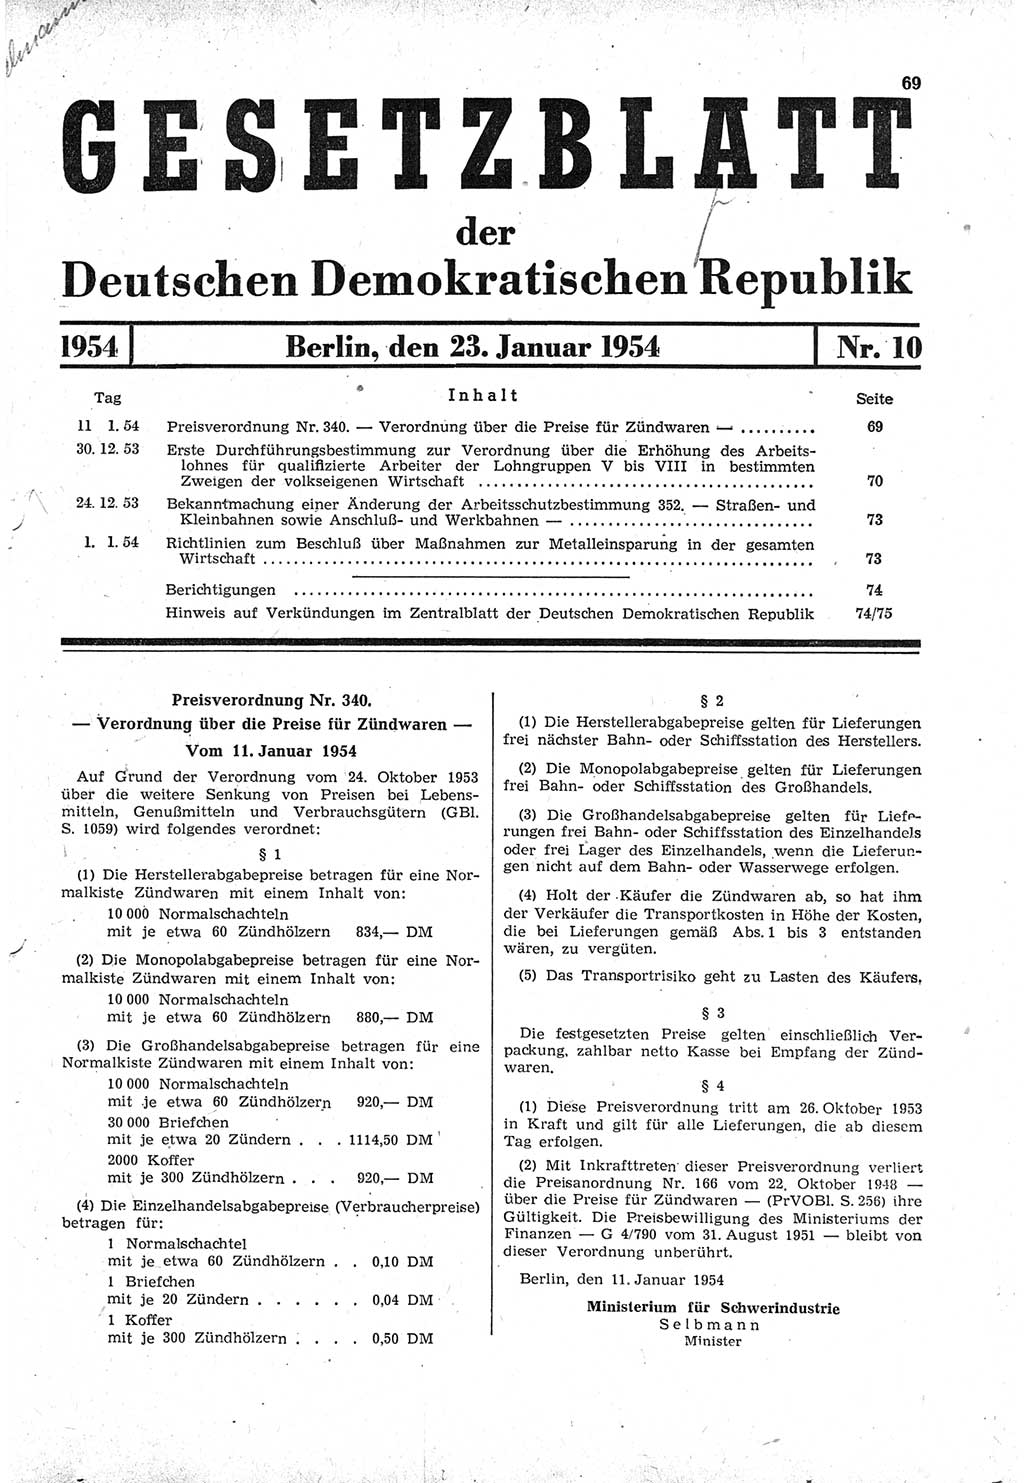 Gesetzblatt (GBl.) der Deutschen Demokratischen Republik (DDR) 1954, Seite 69 (GBl. DDR 1954, S. 69)